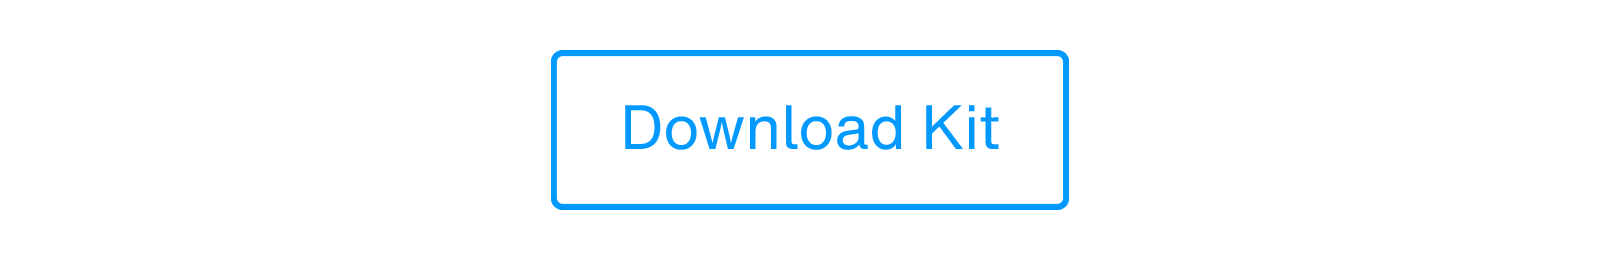 Download kit_01